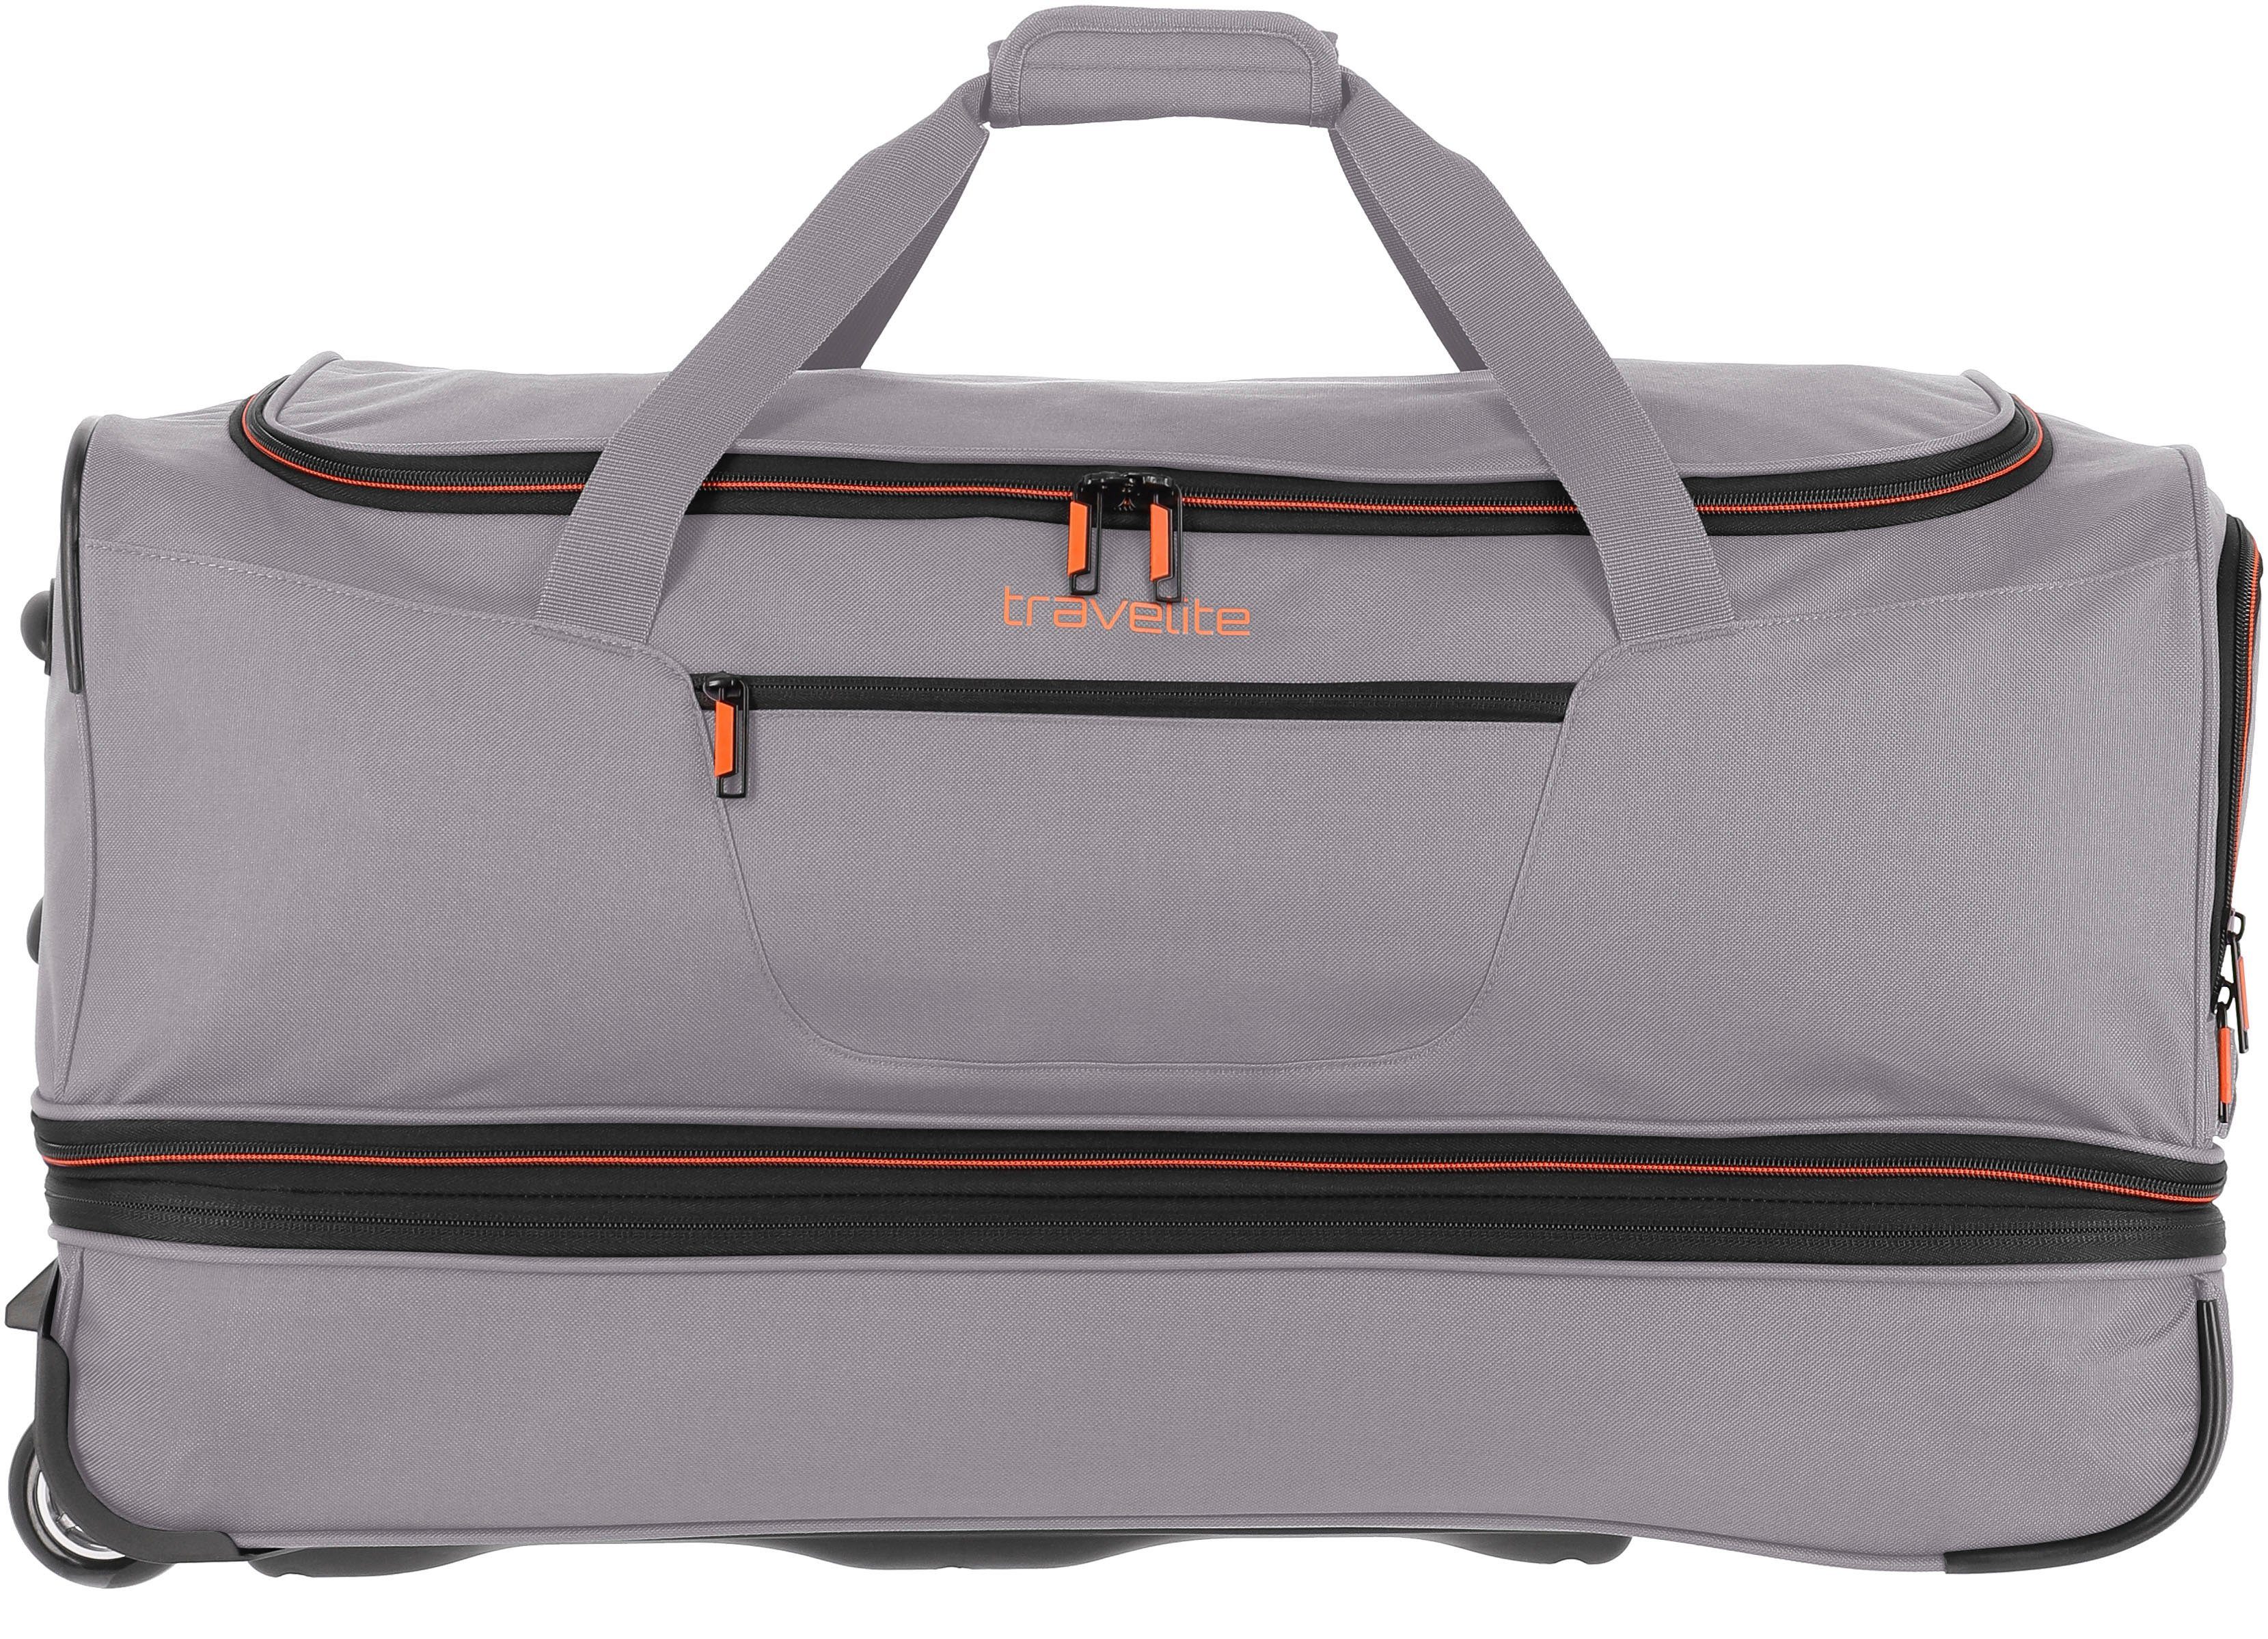 Volumenerweiterung mit travelite Reisetasche 70 cm, grau/orange, und Trolleyfunktion Basics,